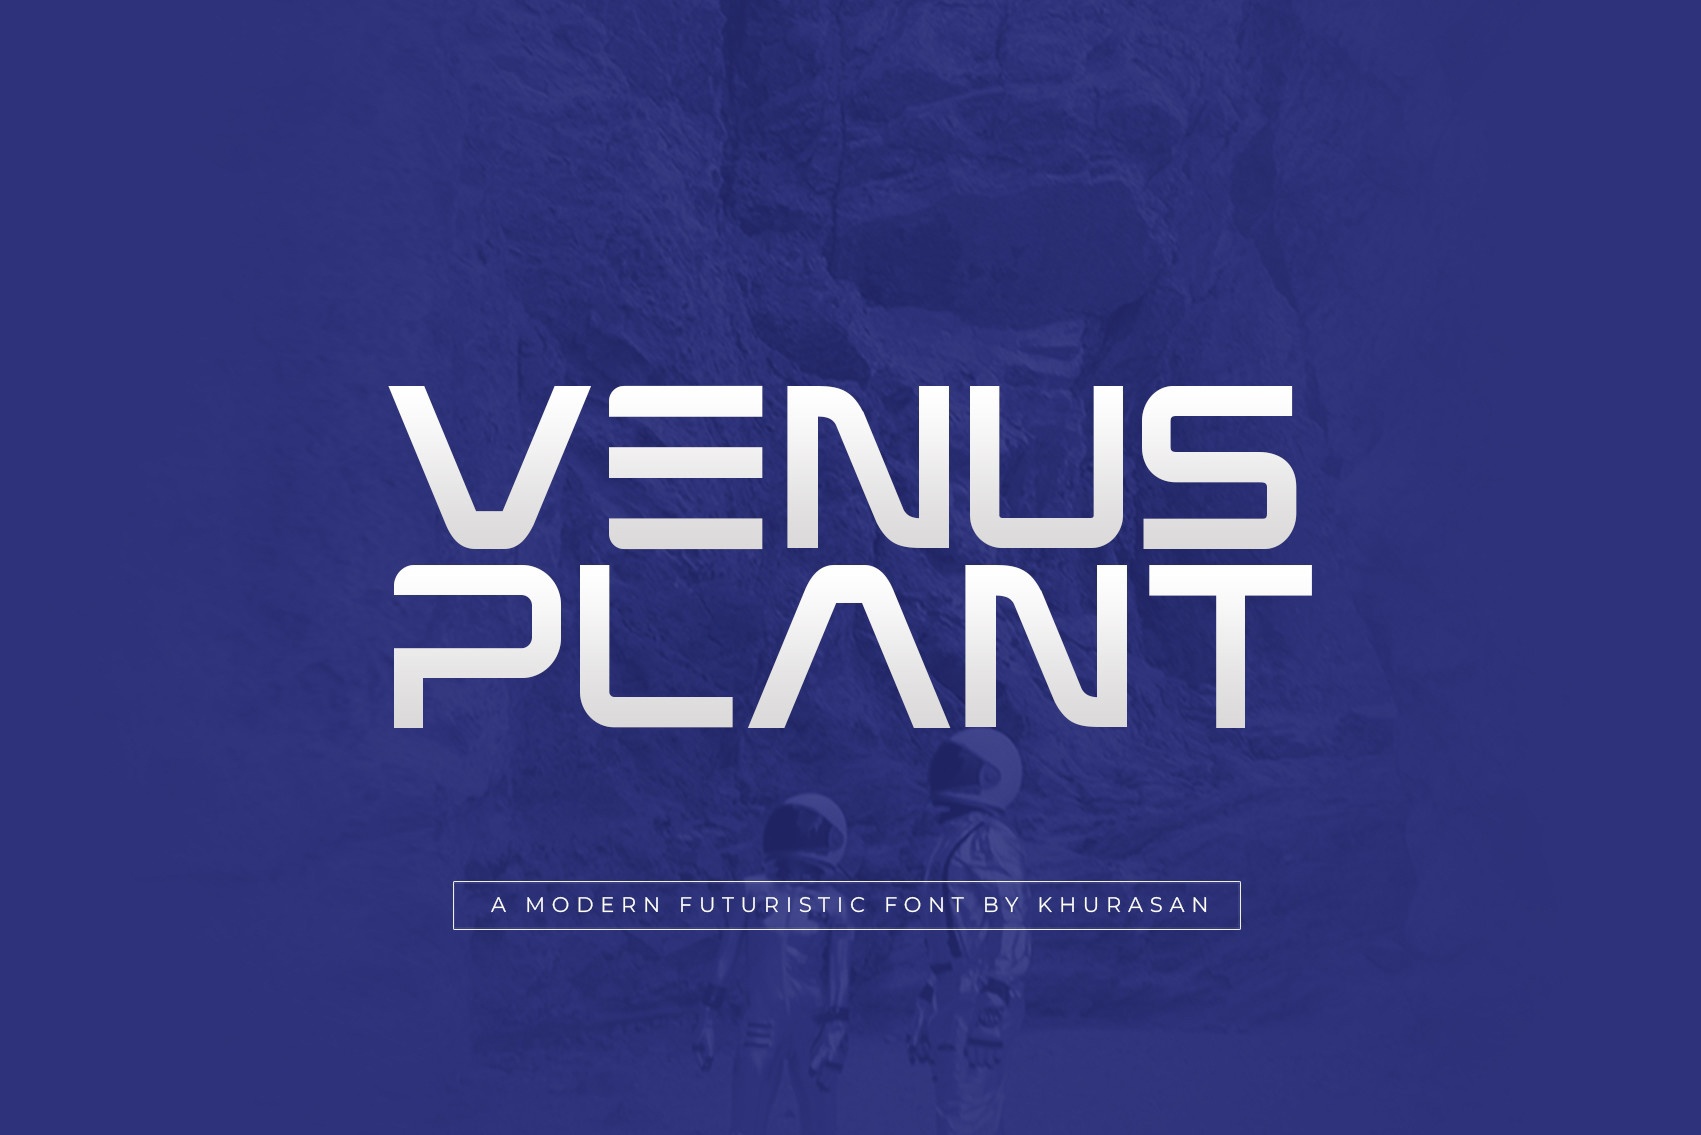 Font Venus Plant